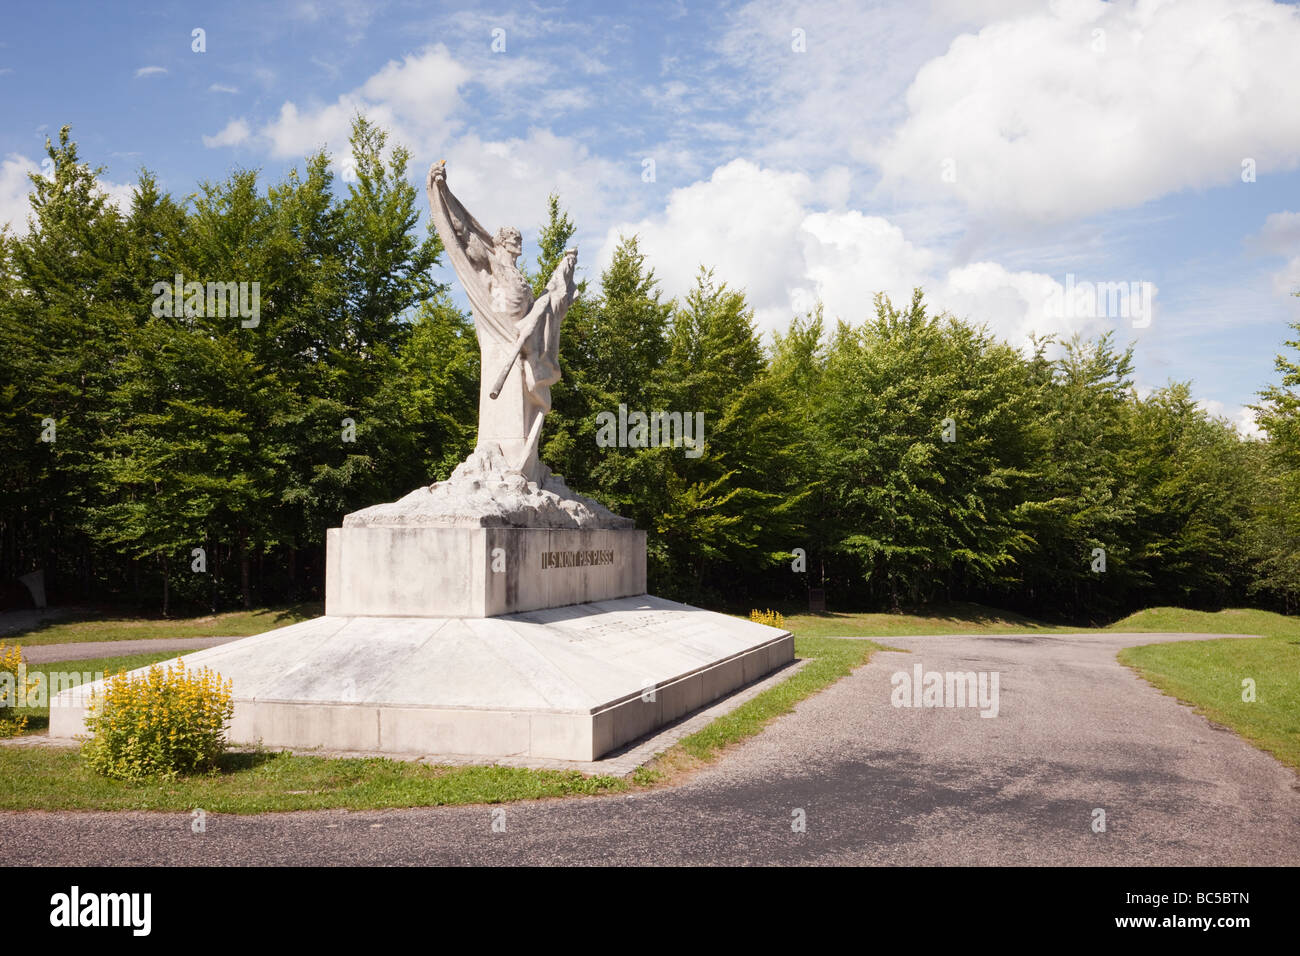 Escultura Conmemorativa de la Primera Guerra Mundial en Le Mort Homme hill inscrito "no deberán pasar'. Chattancourt Verdun Francia Foto de stock